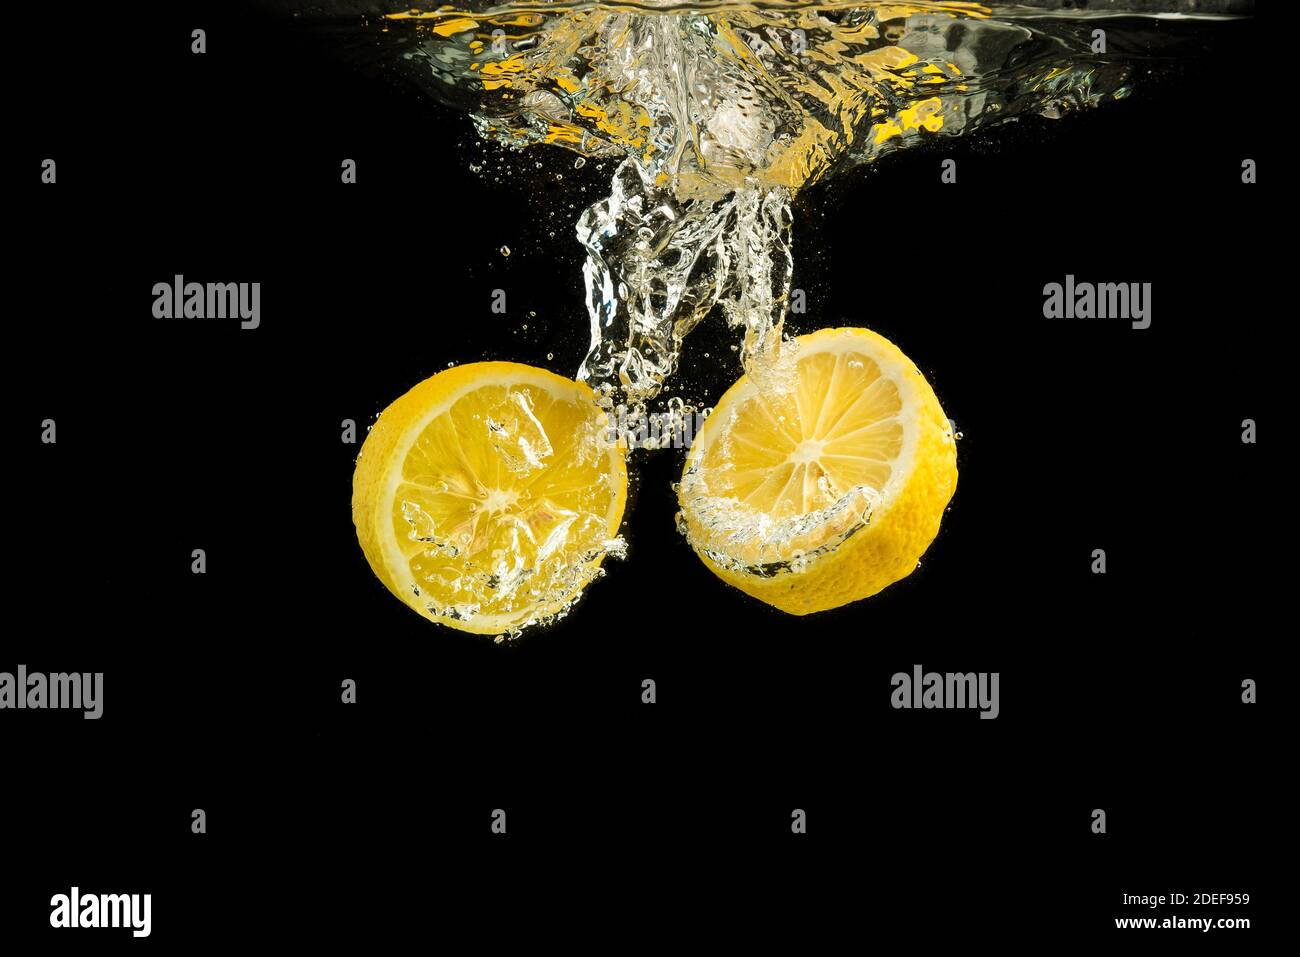 Lemon: Chanh là loại quả không chỉ được sử dụng trong ẩm thực mà còn có tác dụng tuyệt vời cho sức khỏe và làm đẹp. Những hình ảnh liên quan đến chanh sẽ giúp bạn tìm hiểu sâu hơn về lợi ích của loại quả này cho sức khỏe con người.